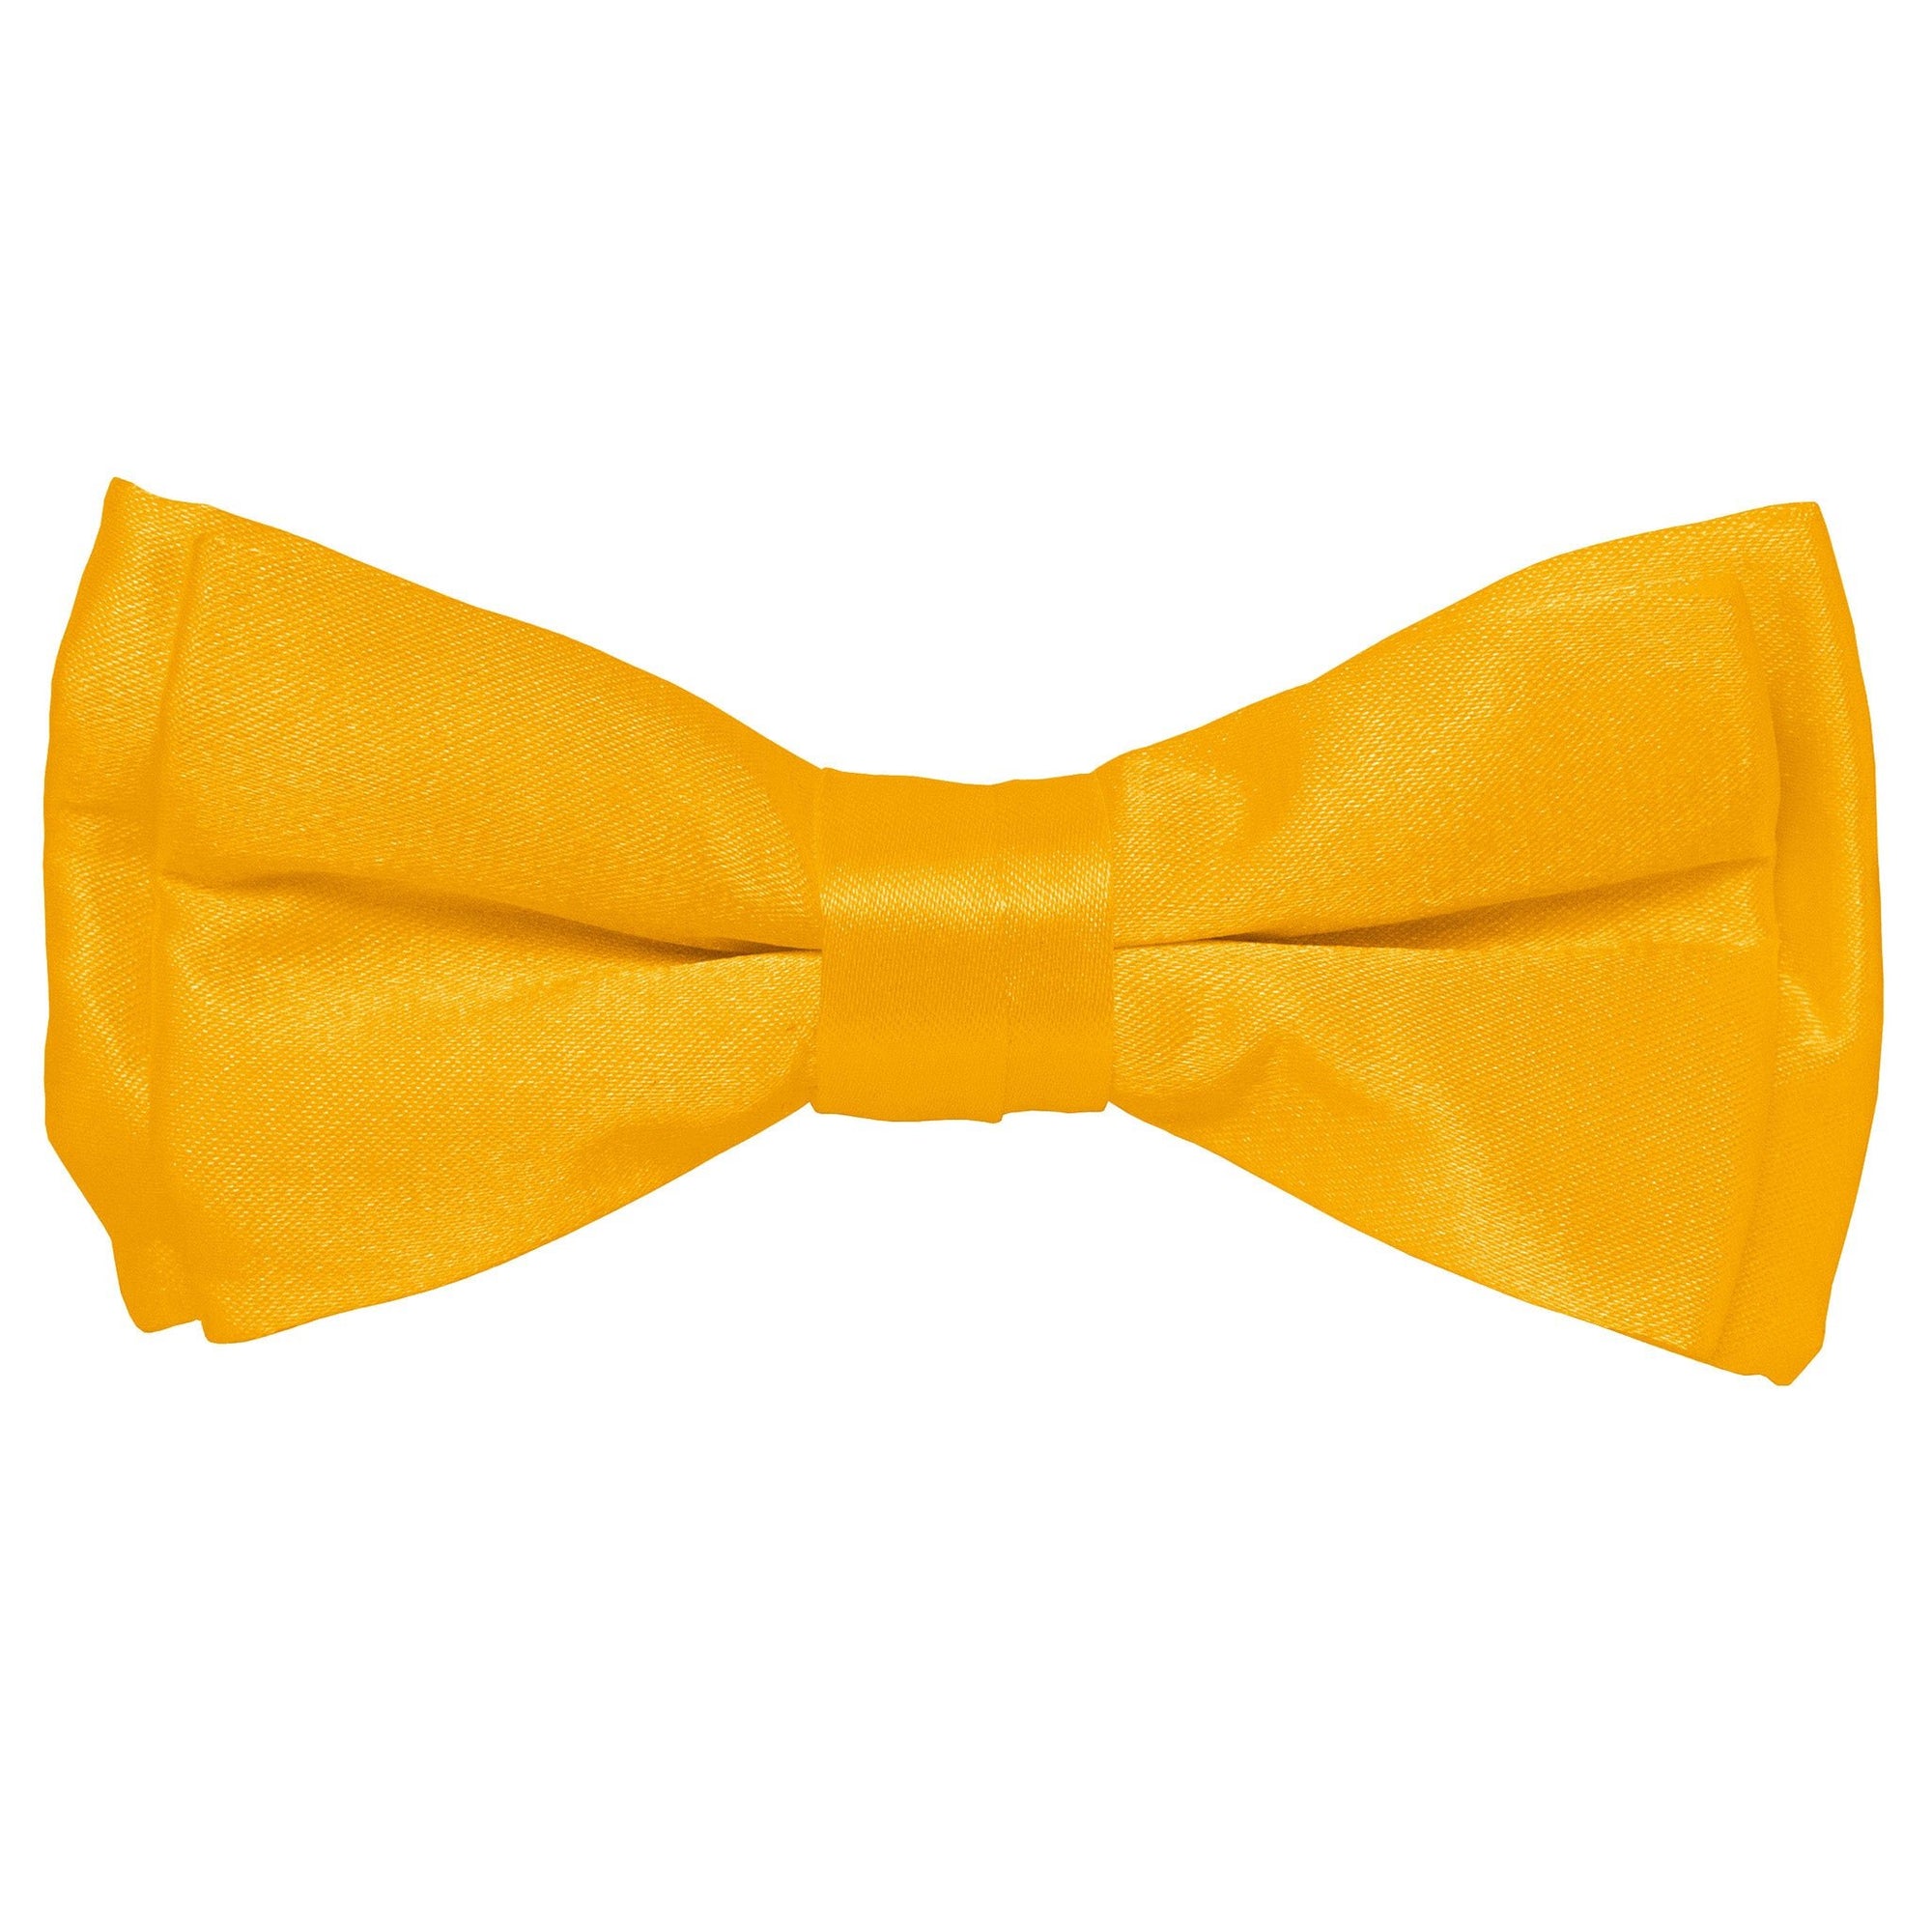 Vittorio Farina Boy's Solid Silky Bow Tie by Classy Cufflinks - boys-amber - Classy Cufflinks